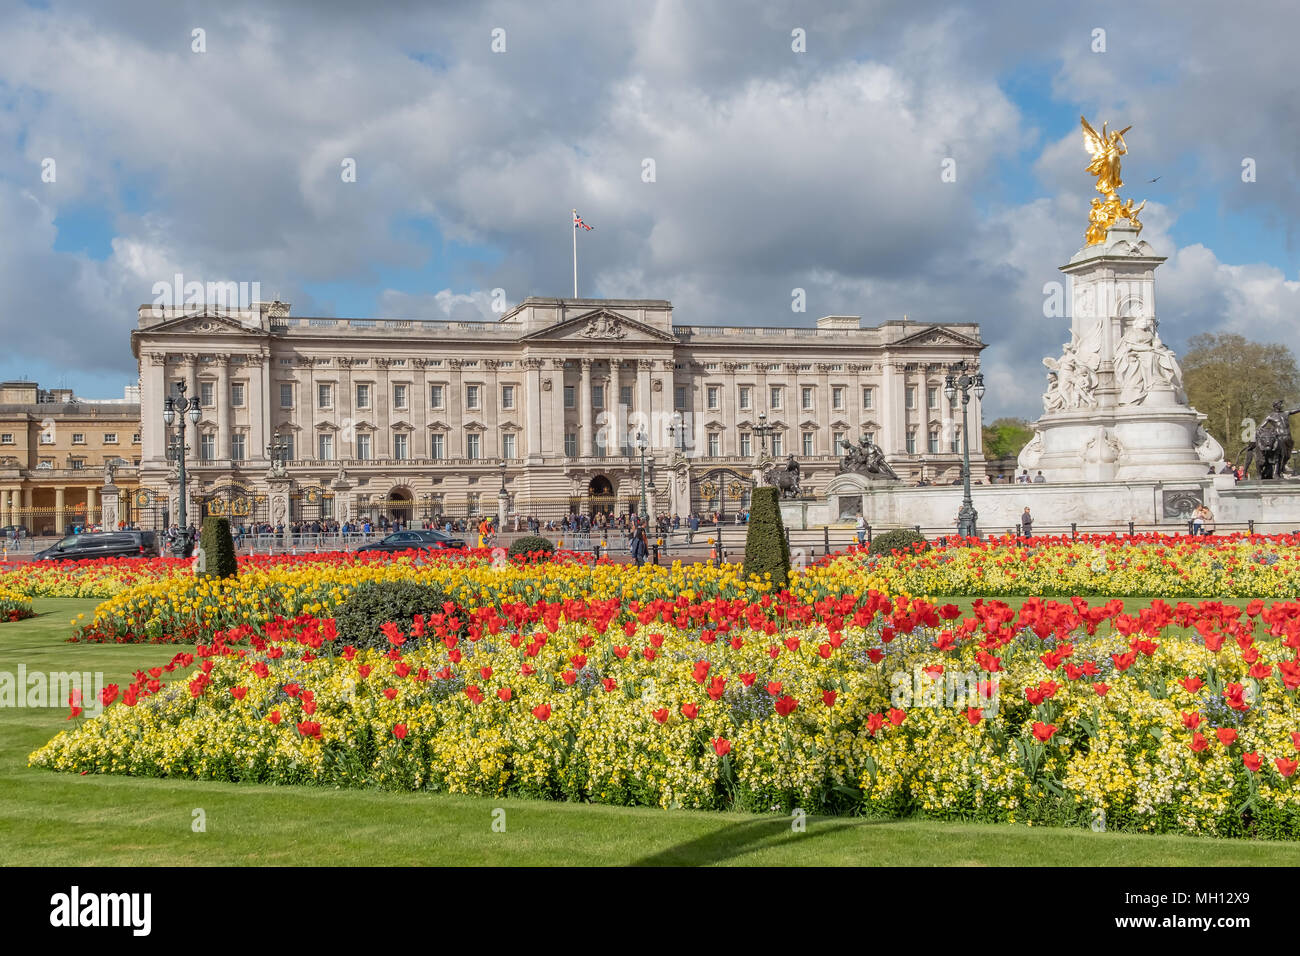 Bunte Betten der gelben und roten Blumen blühen vor dem Buckingham Palace an einem schönen Frühlingstag. Stockfoto